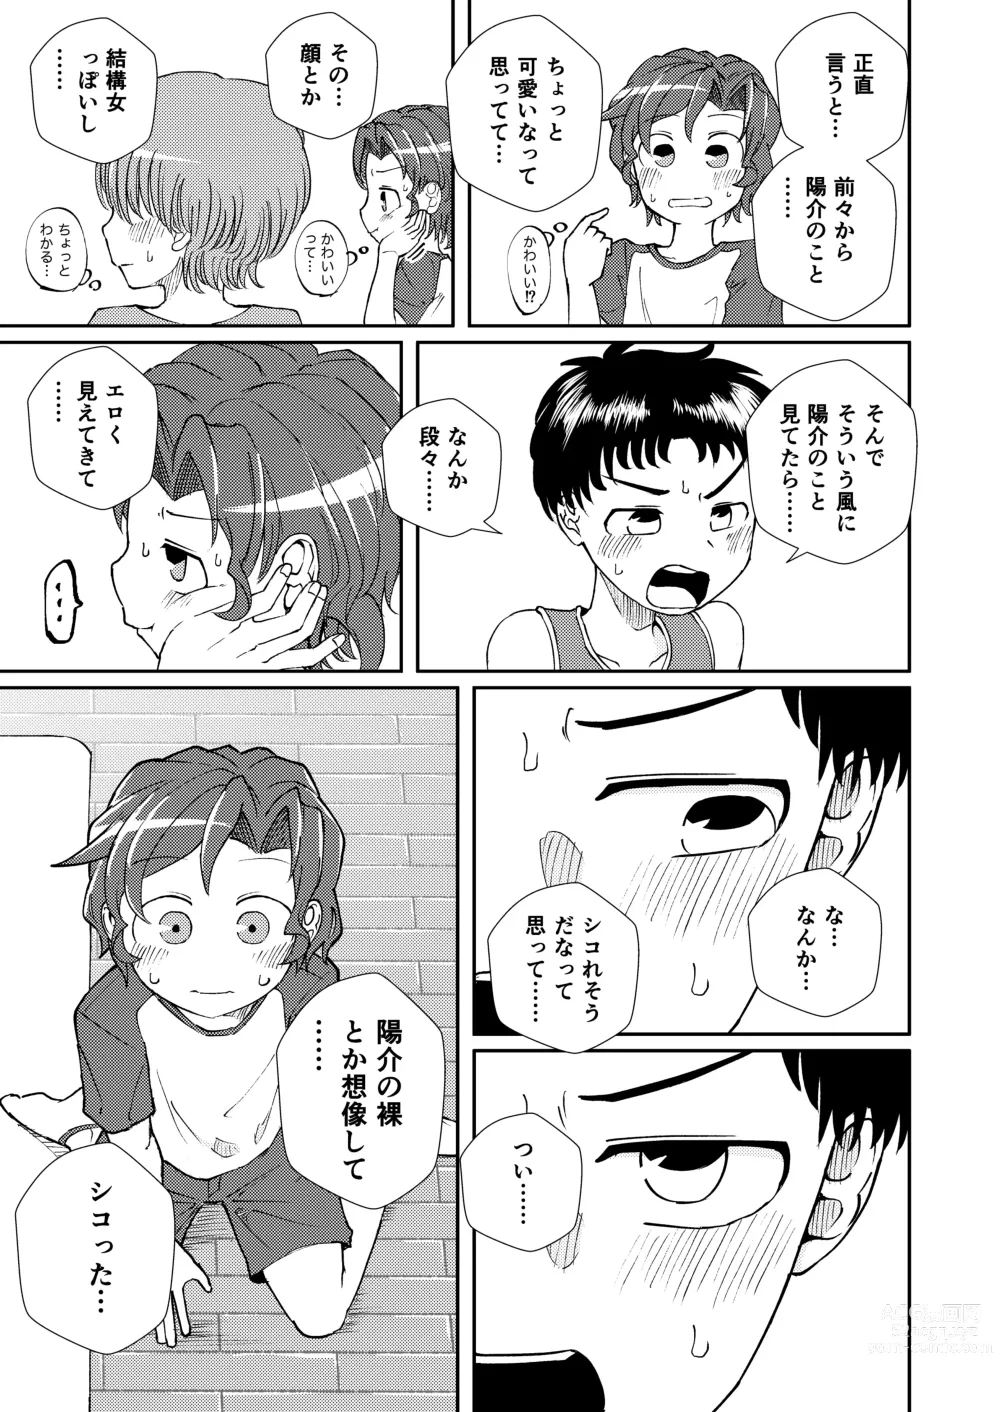 Page 9 of doujinshi Shoujiki Iu to,